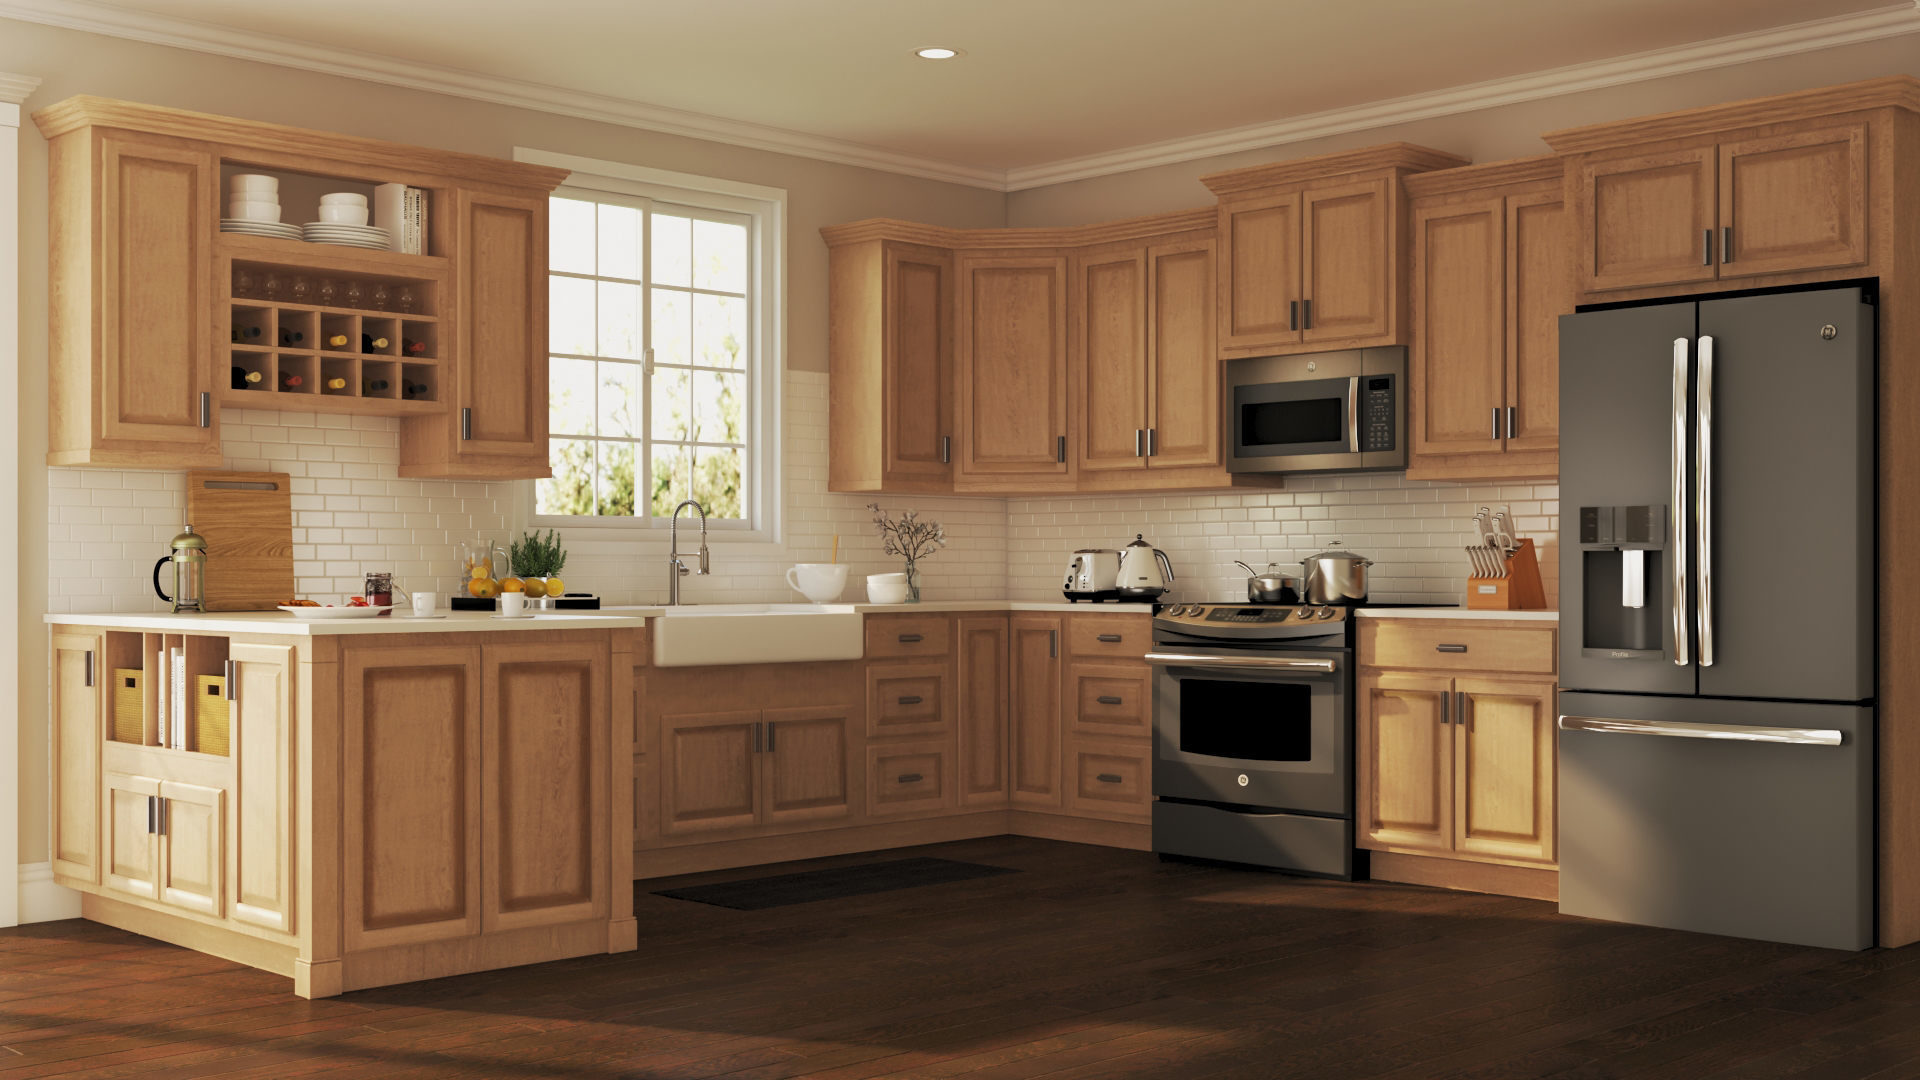 kitchen cabinet designed for older homes